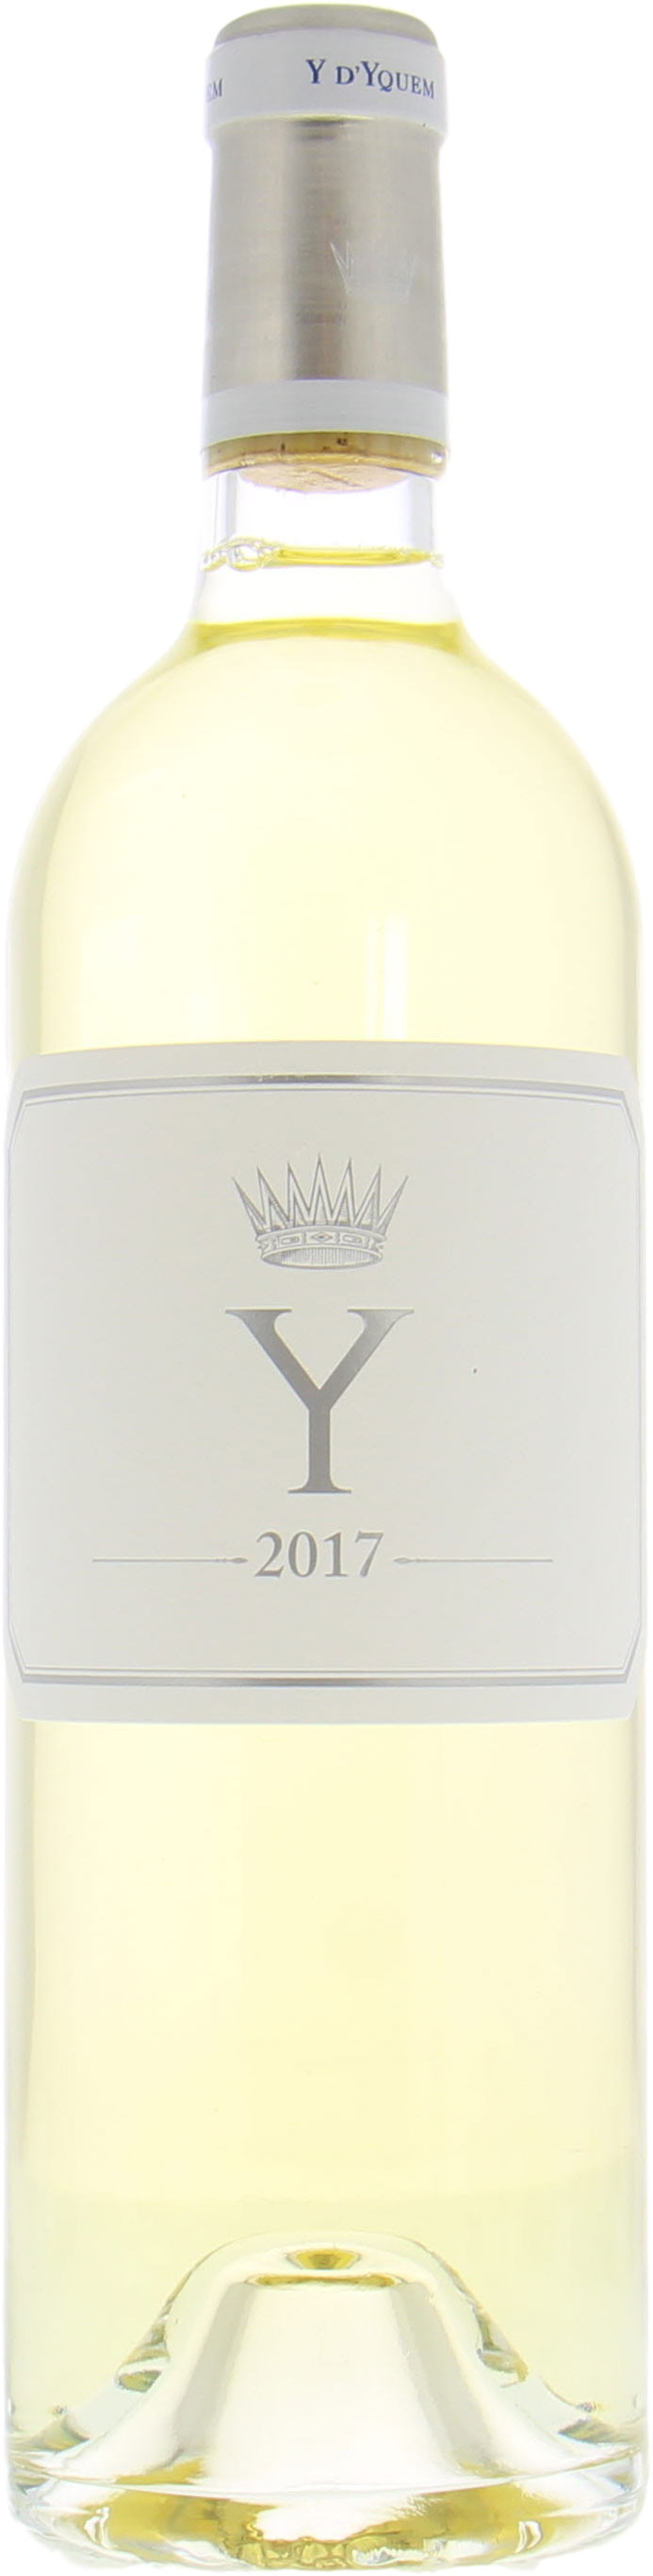 Chateau D'Yquem - Y de Yquem 2017 Perfect